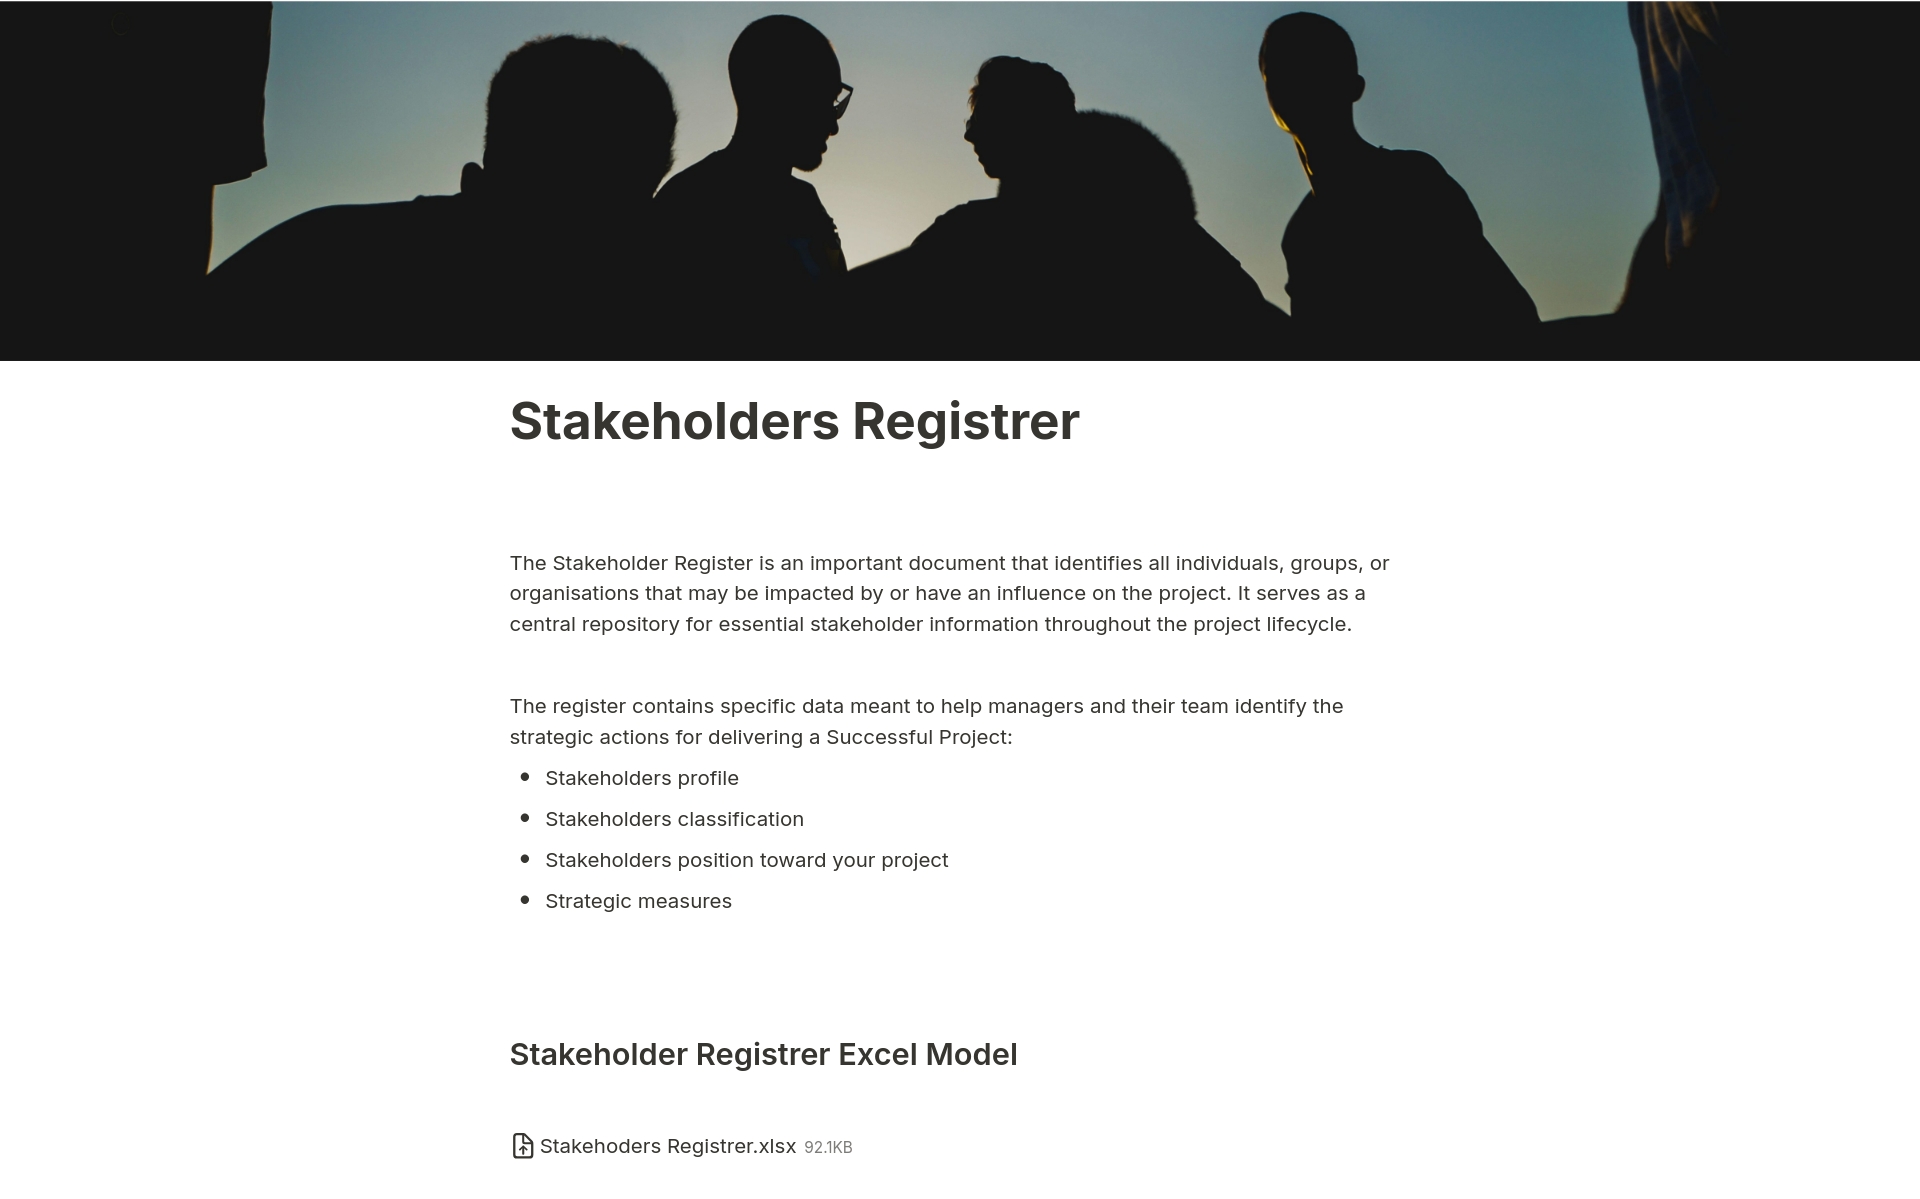 En förhandsgranskning av mallen för Stakeholders Registrer